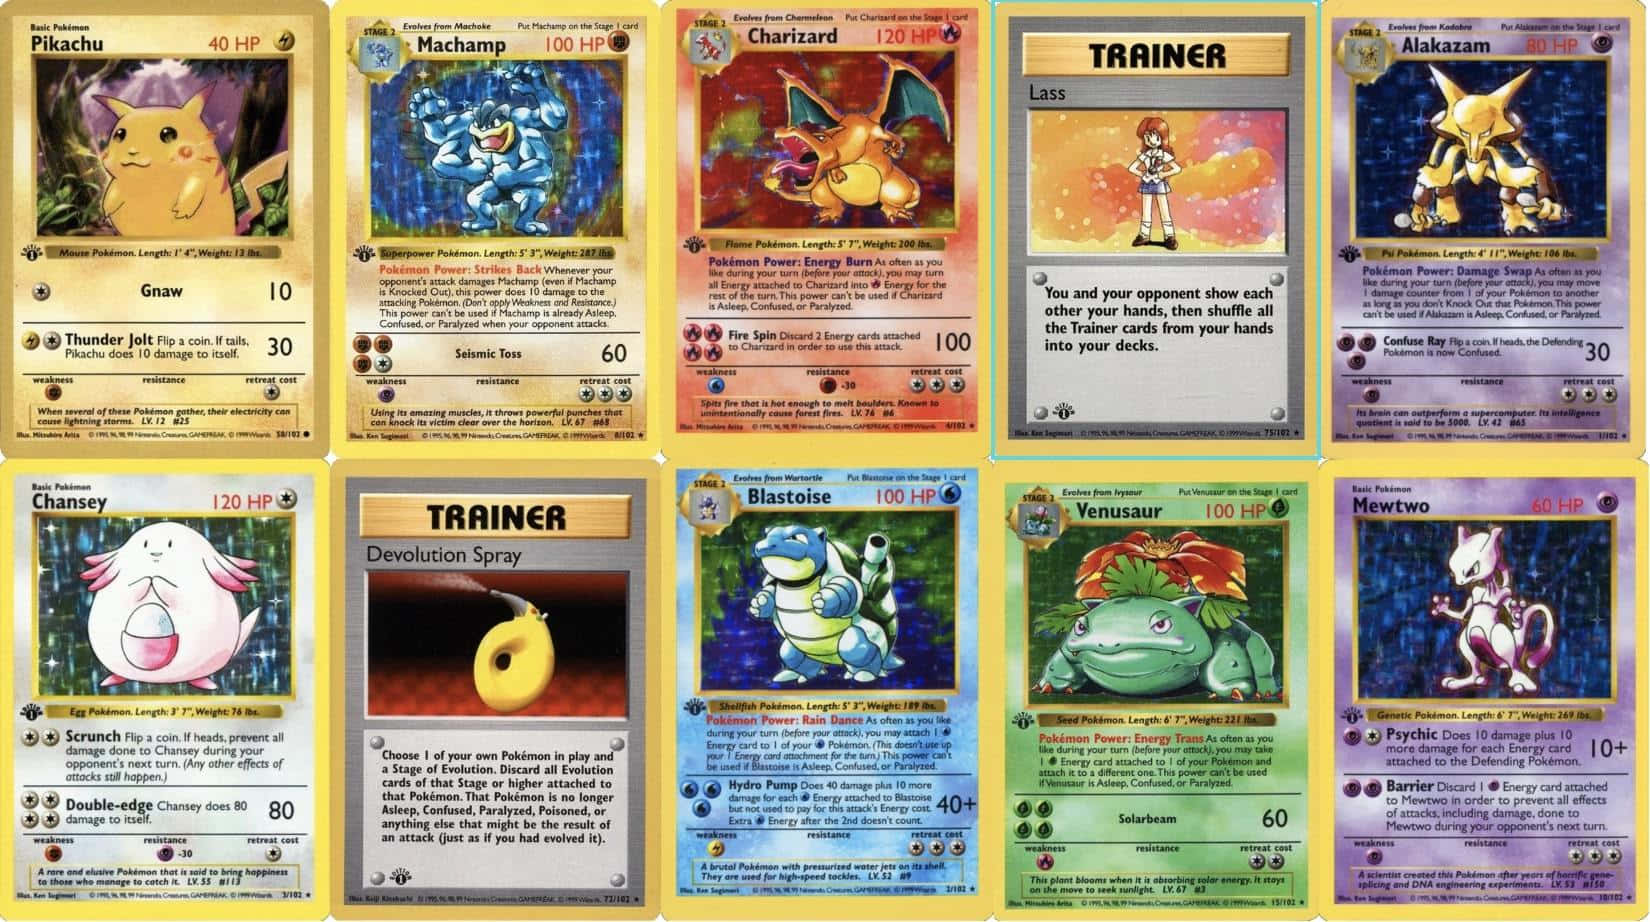 Pokémonkortuppsättning - Pokémon Kortuppsättning - Pokémon Kortuppsättning - Pokémon Kortuppsättning - Pokémon Kortuppsättning.